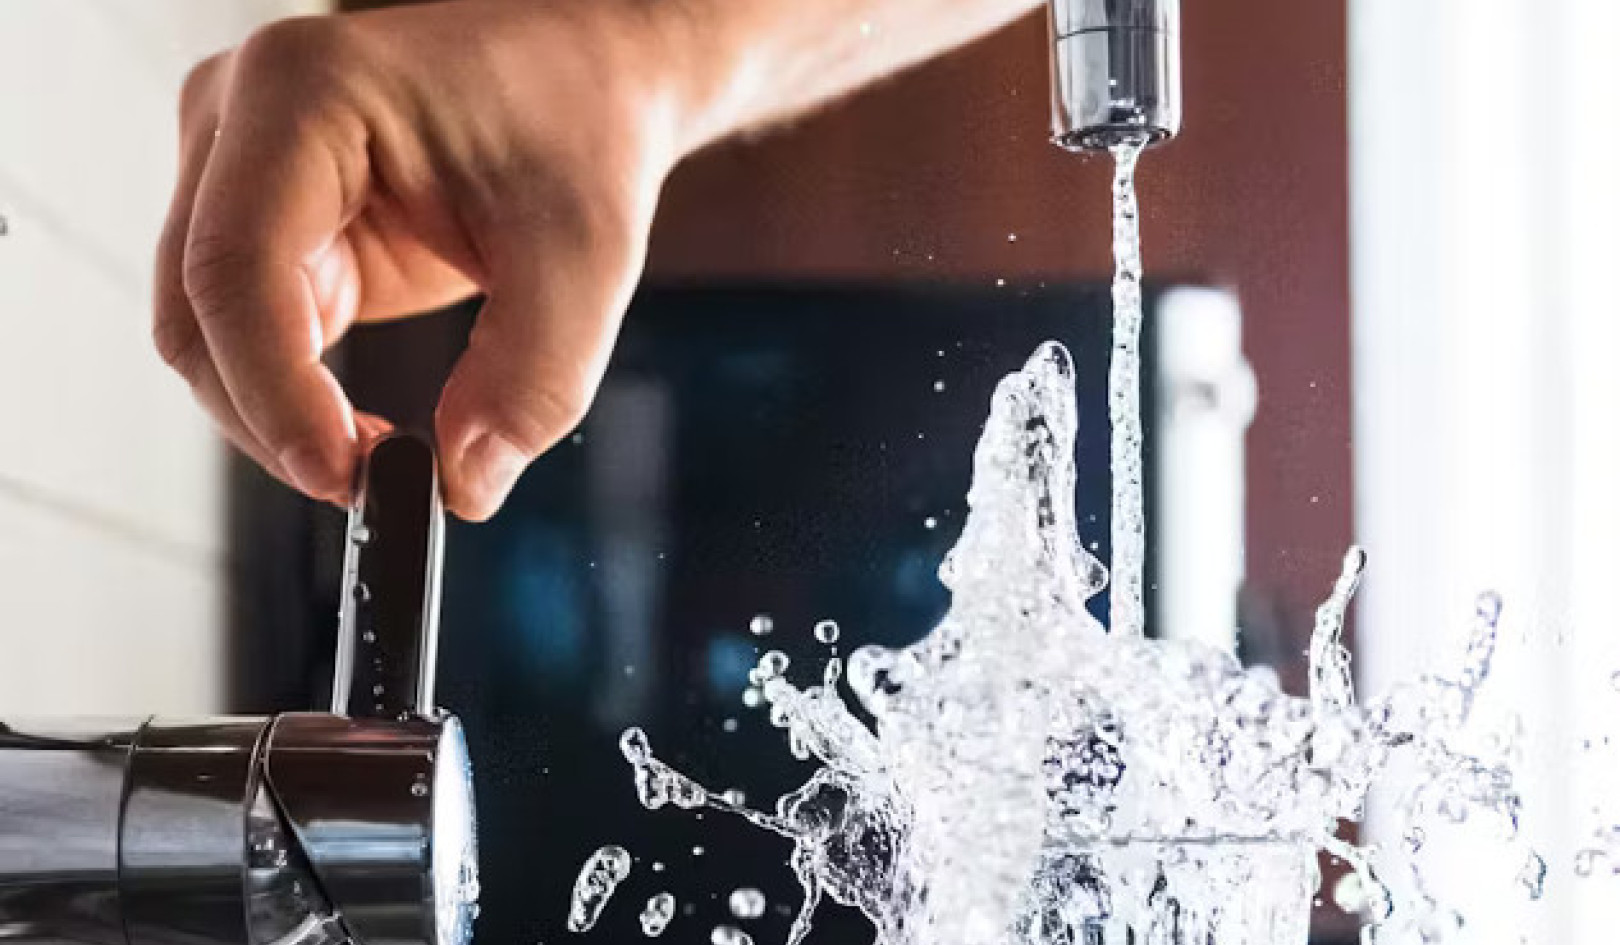 Filtrare i "prodotti chimici per sempre" dannosi: modi per purificare l'acqua potabile